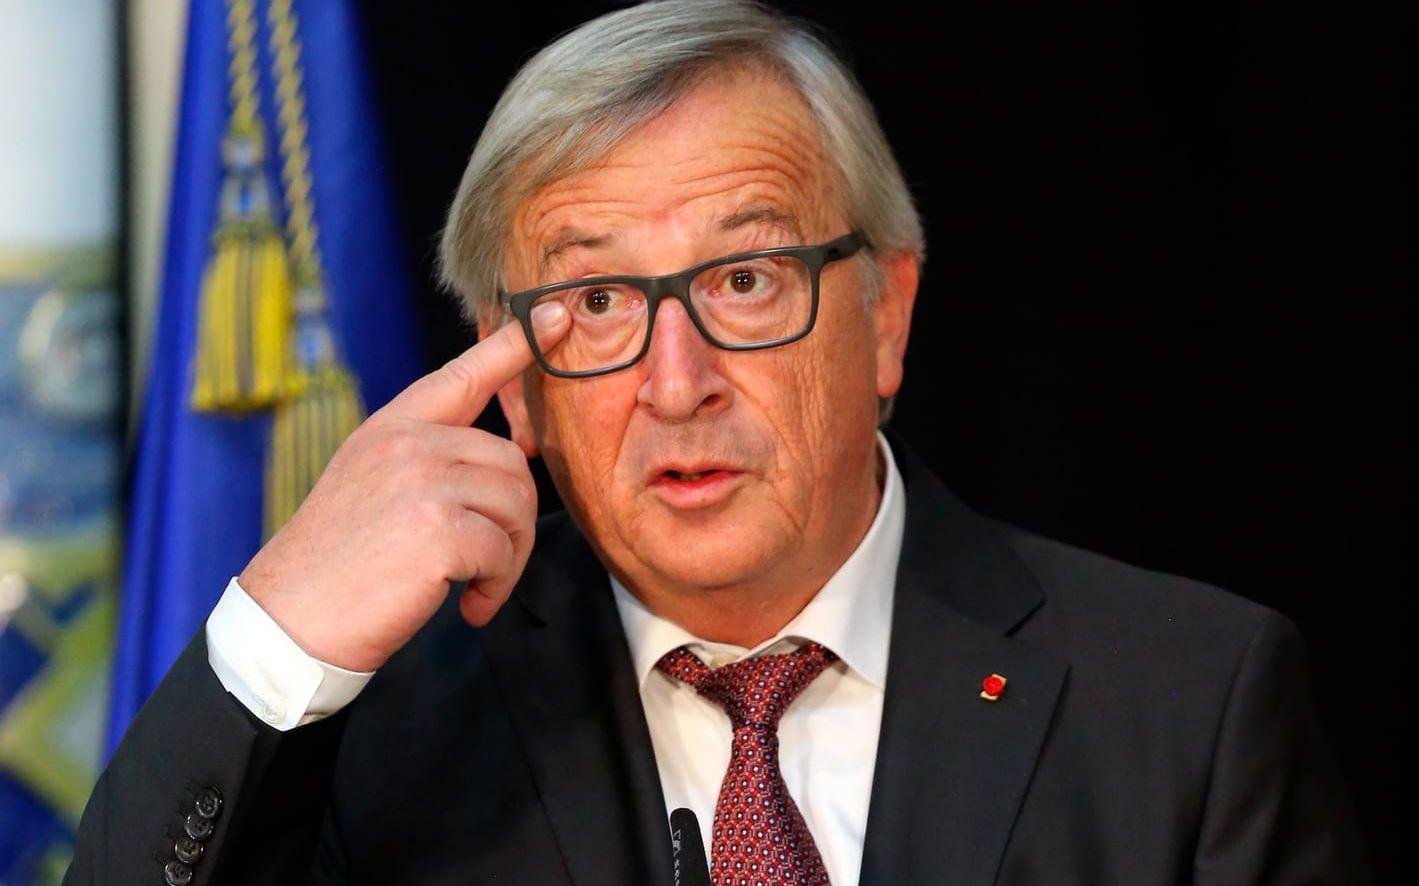 Jean-Claude Juncker är det närmaste man kommer en president inom EU. Den kristdemokratiska politikern har bland annat varit premiärminister i hemlandet Luxemburg. I Junckers senaste tal till unionen menade han att EU nu har "vind i seglen". Tillsammans med Stefan Löfven är Jean-Claude Juncker värd för EU-toppmötet i Göteborg. Bild: AP Photo/Armando Franca